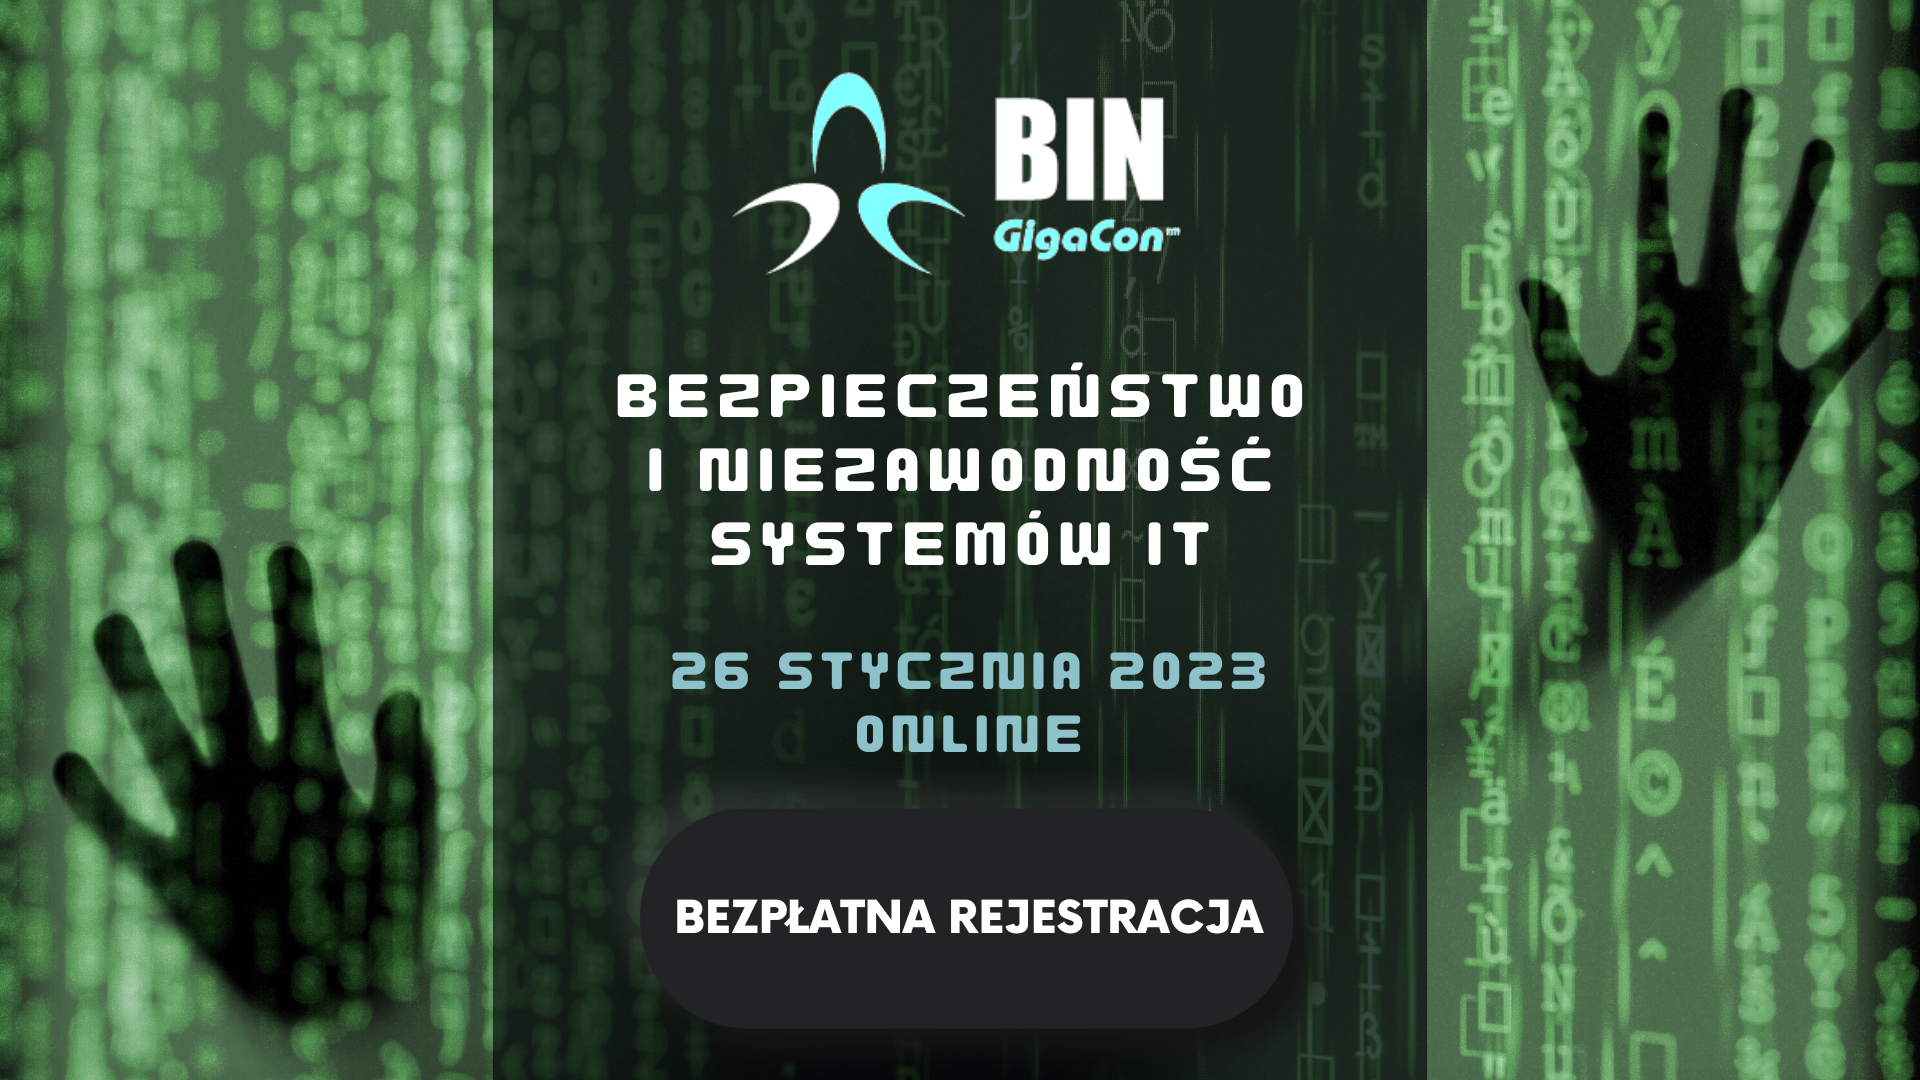 BIN konferencja online